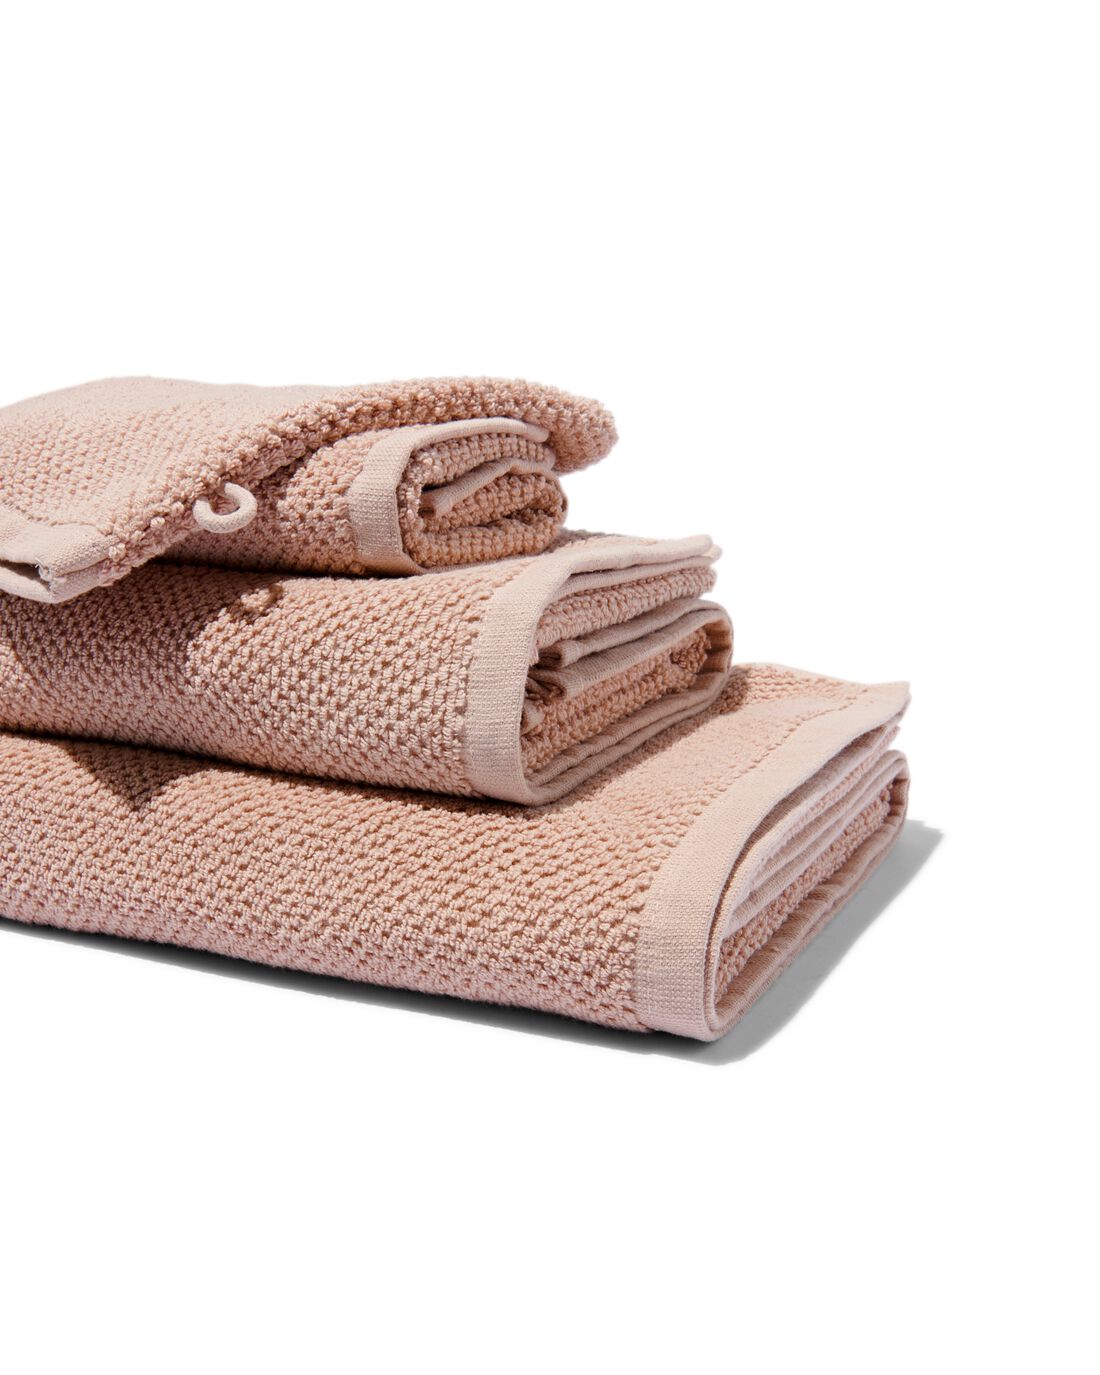 HEMA Handdoeken Tweedekans Recycled Katoen Lichtroze (lichtroze)